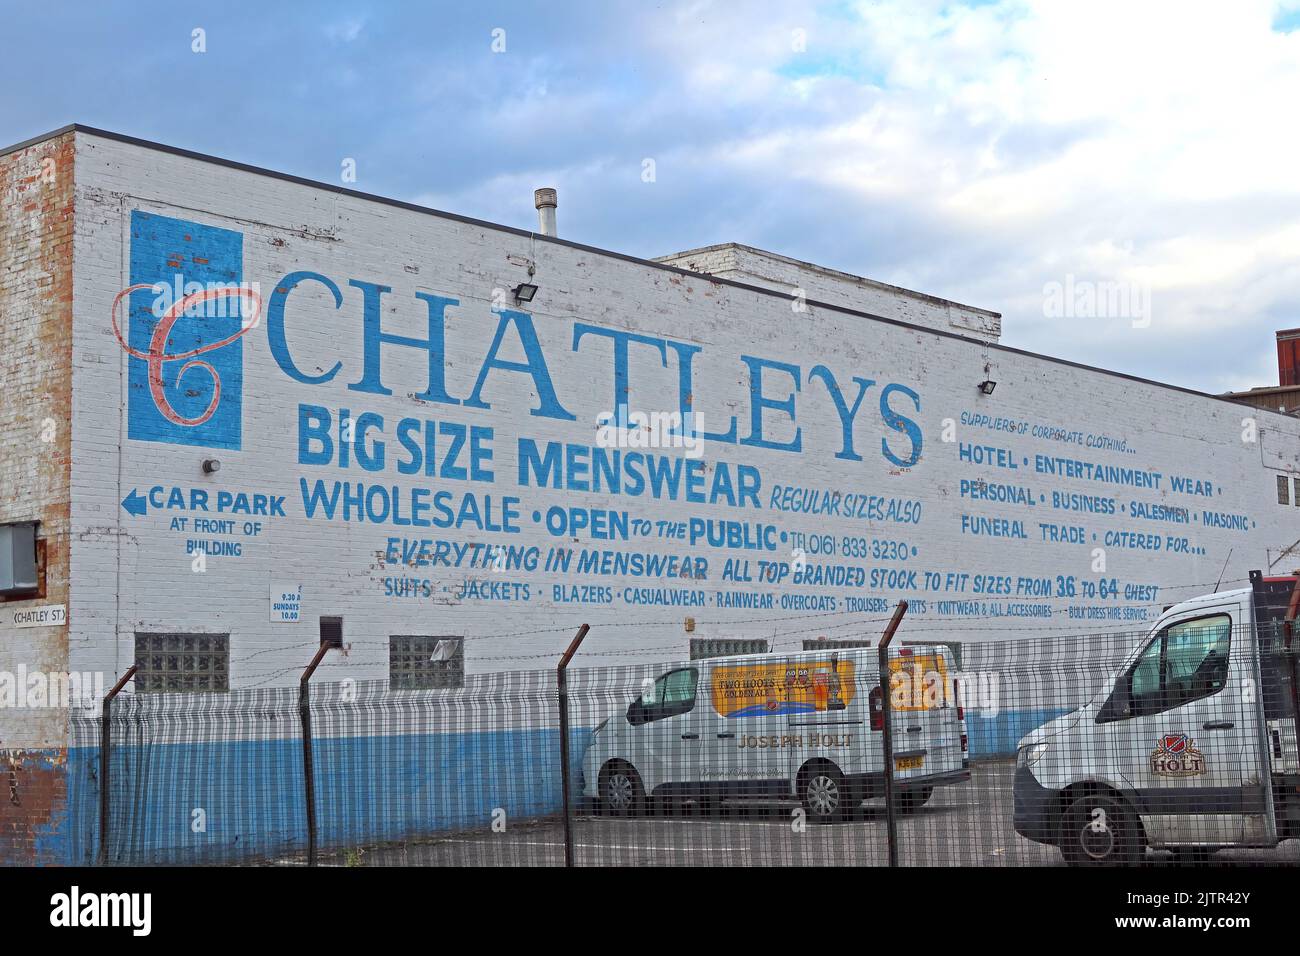 Chatleys, Grande taglia menswear, Cheetham Hill, Manchester, Inghilterra, Regno Unito, M4 4ER Foto Stock